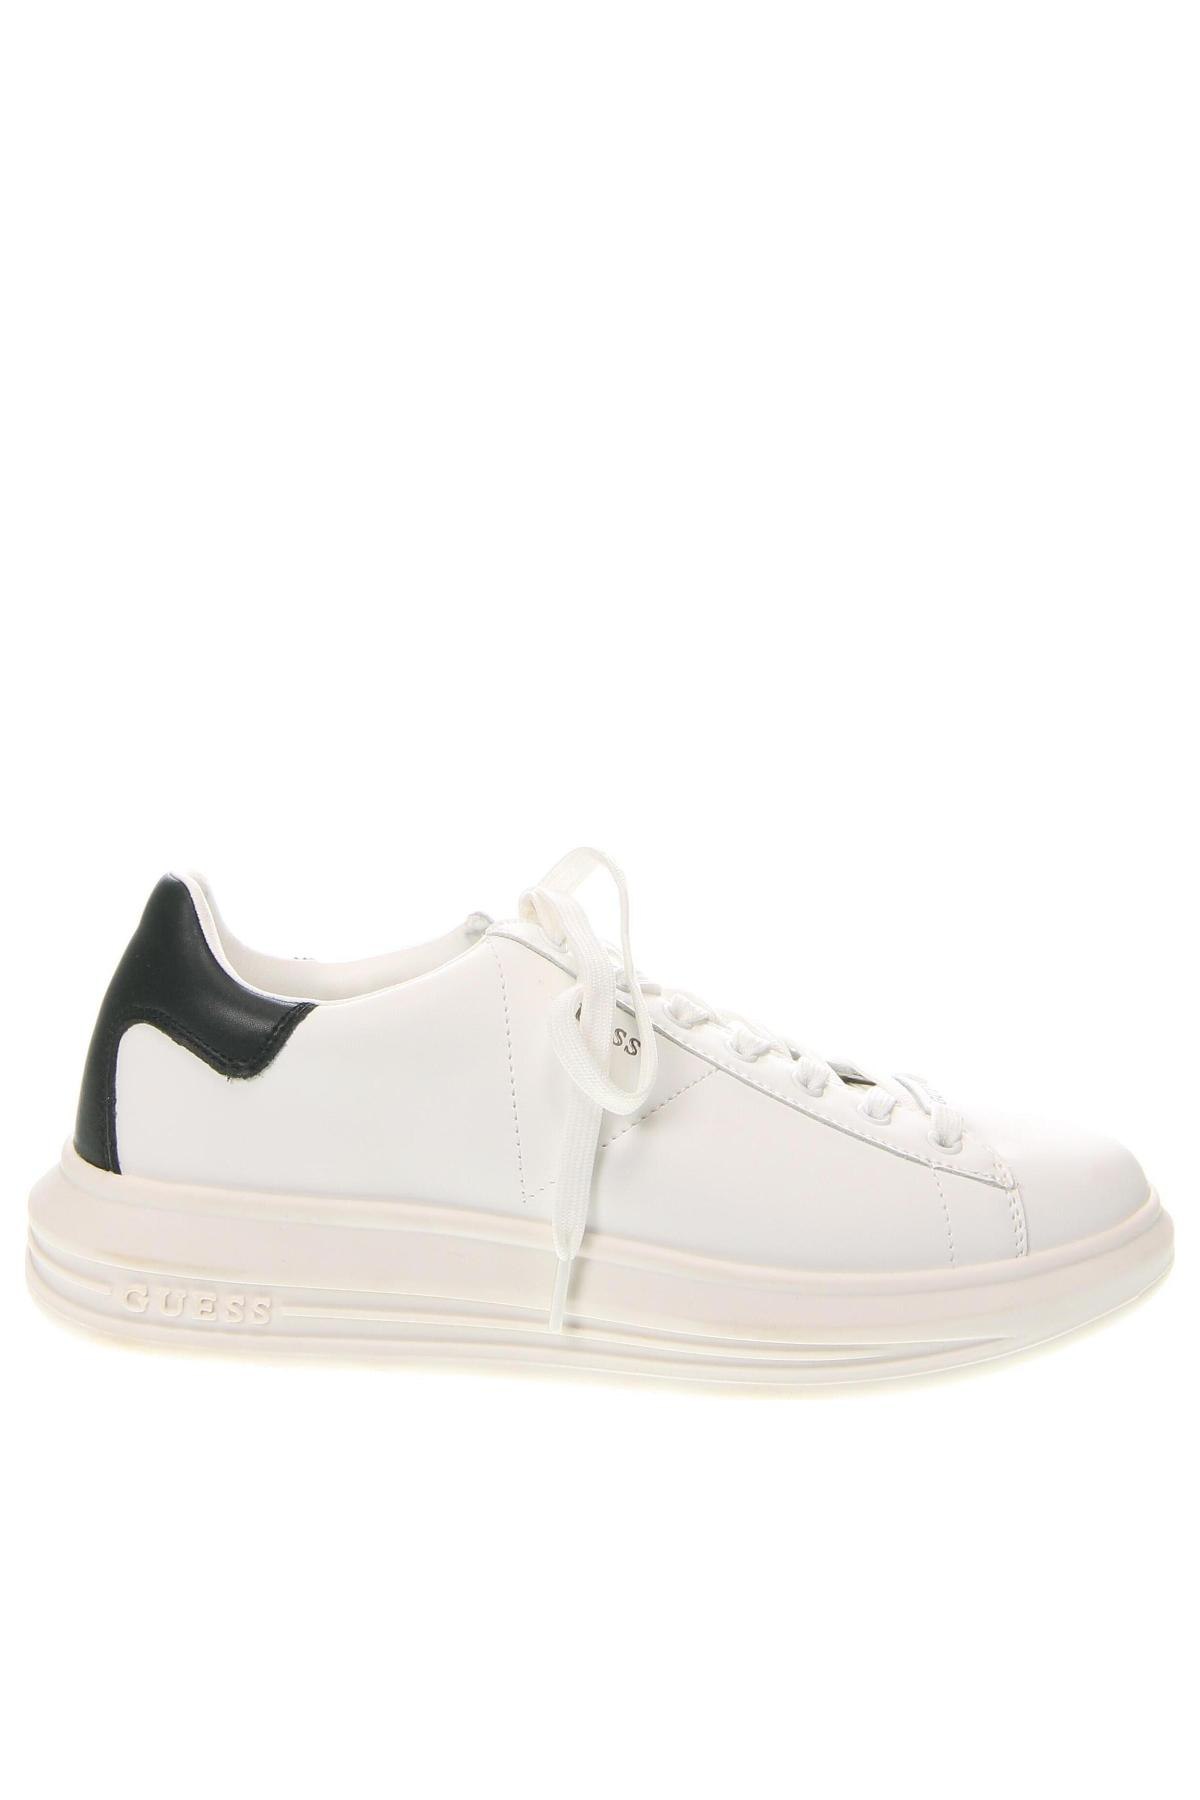 Ανδρικά παπούτσια Guess, Μέγεθος 41, Χρώμα Λευκό, Τιμή 60,62 €